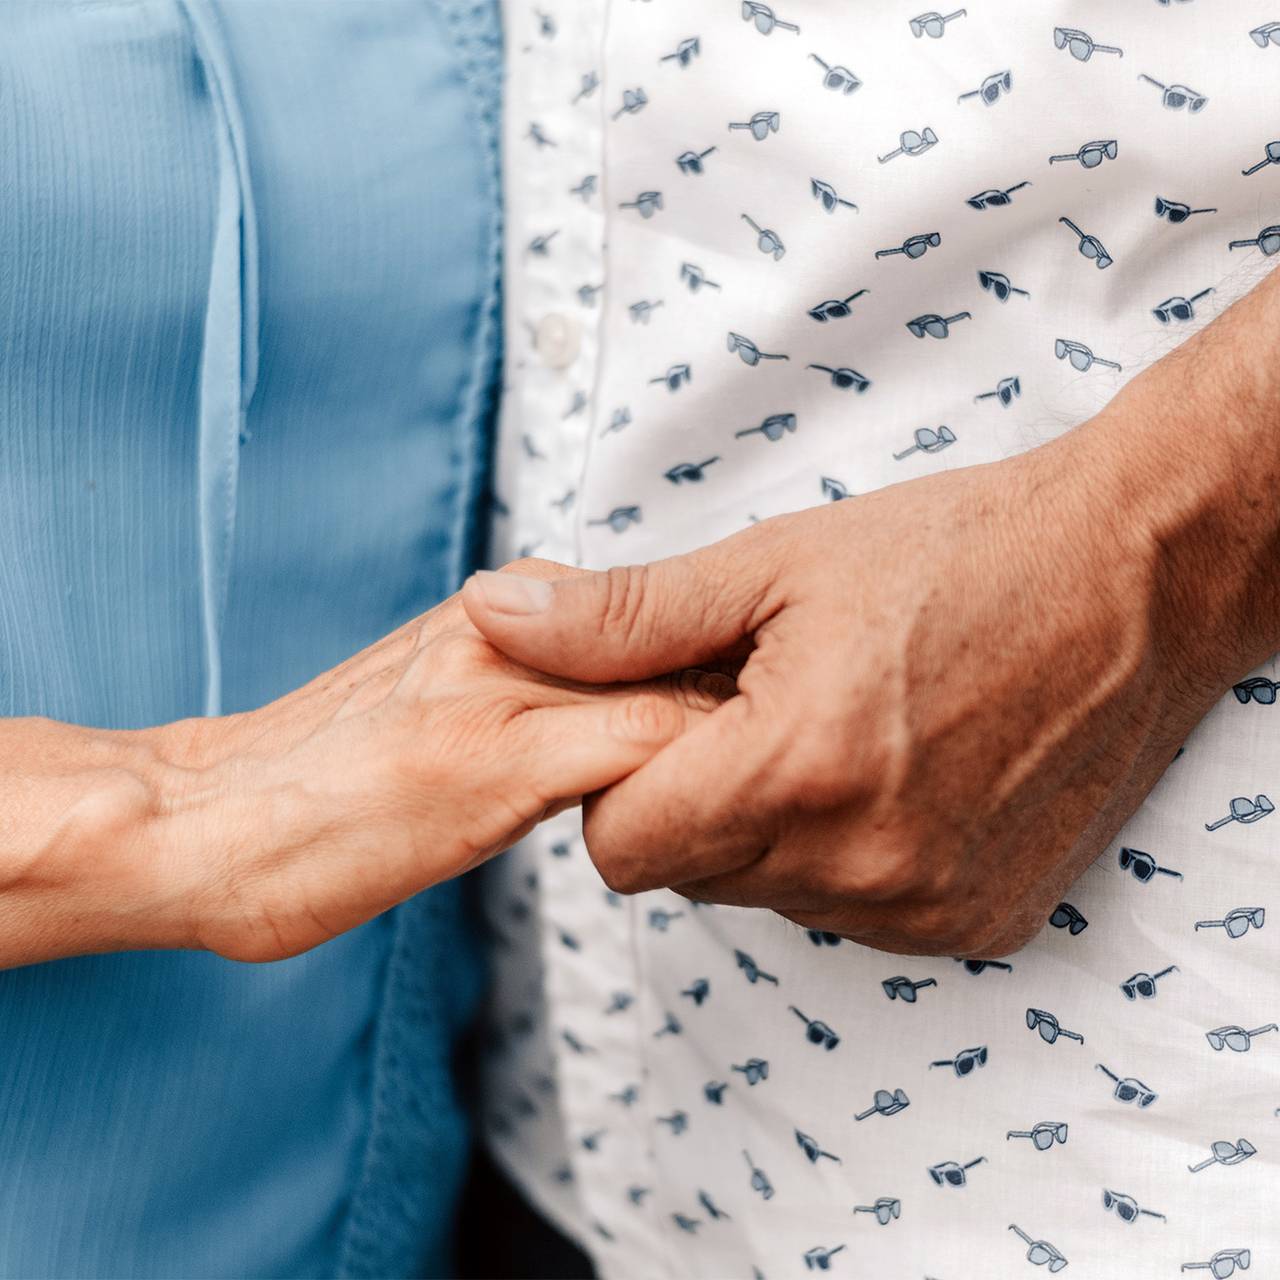 Секс спасает пожилых людей от деменции: публикуем результаты 5-летнего исследования | PSYCHOLOGIES